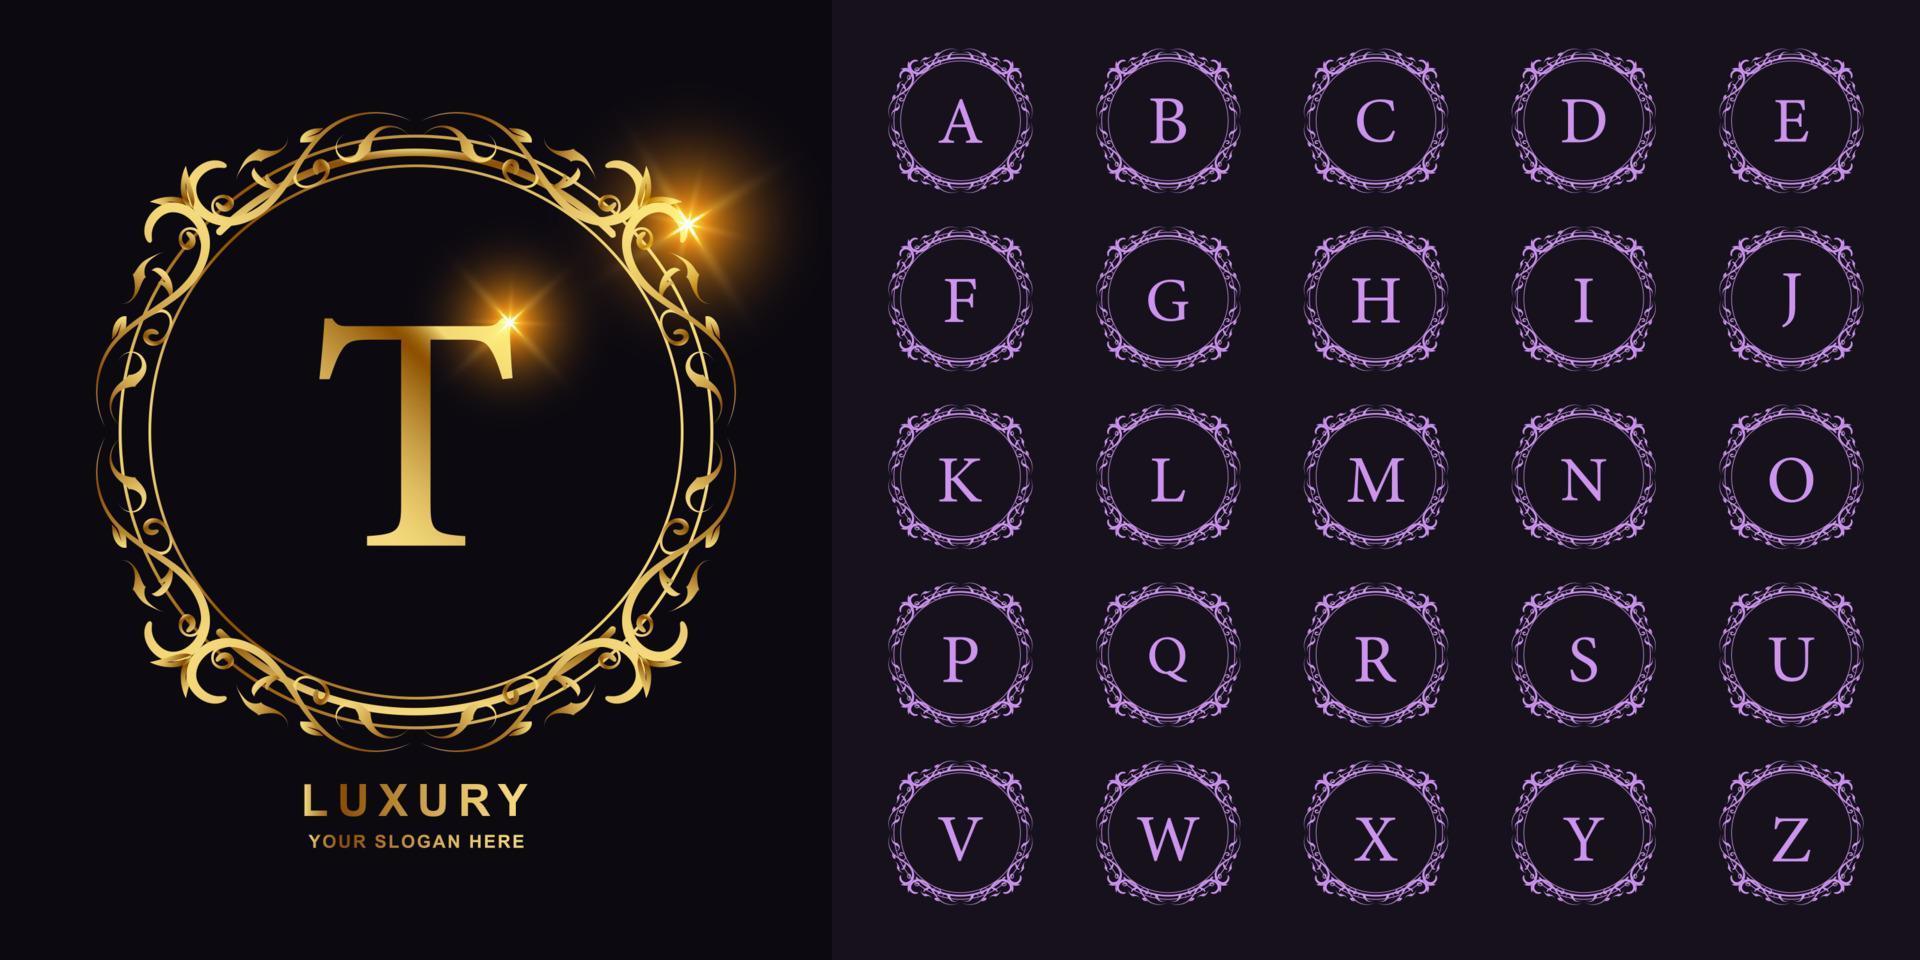 letter t of collectie eerste alfabet met luxe ornament bloemen frame gouden logo sjabloon. vector